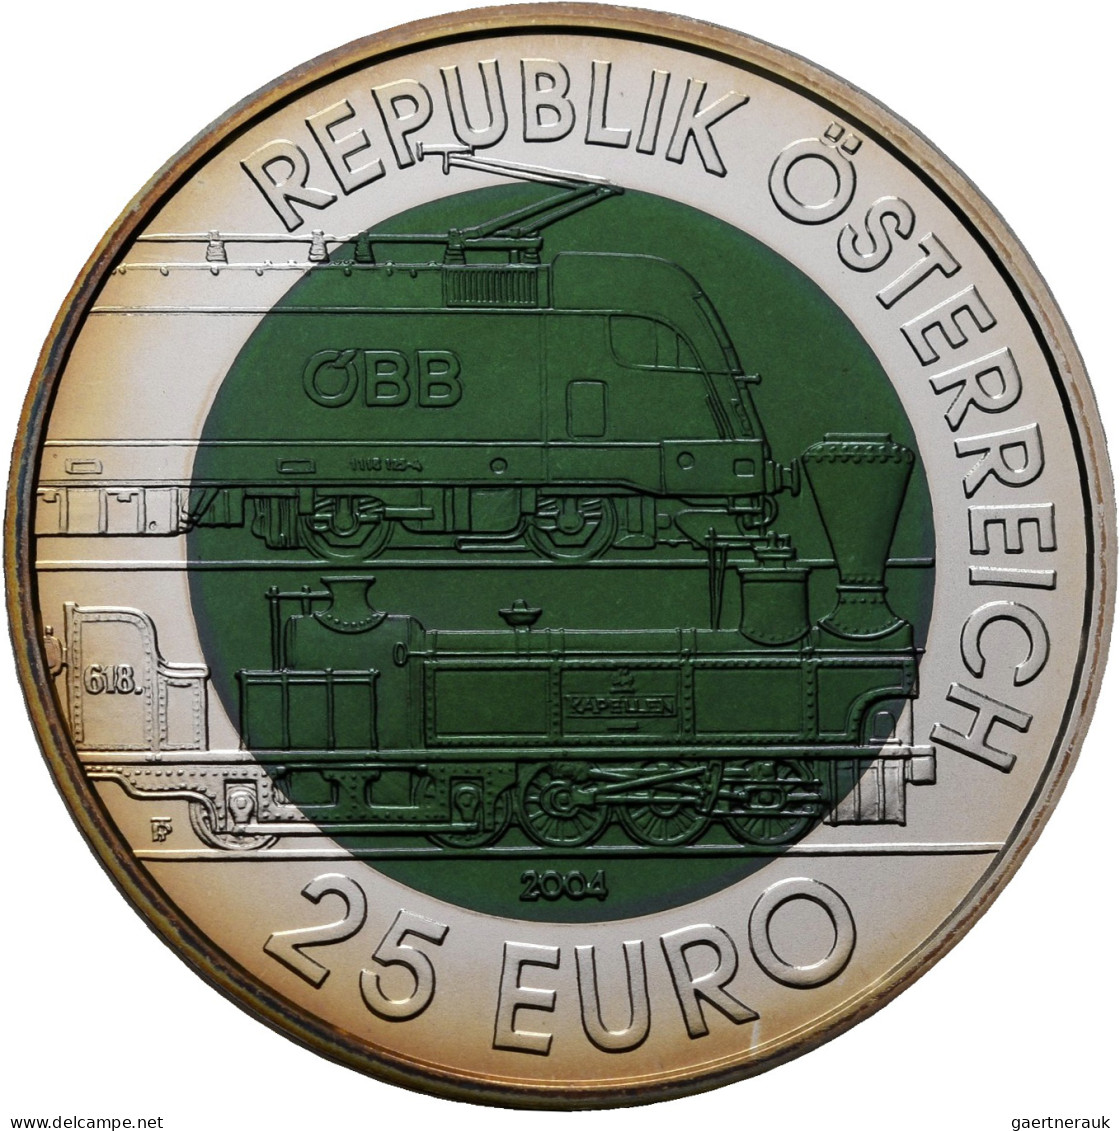 Österreich: 25 Euro 2004 150 Jahre Semmeringbahn. Silber-Niob-Legierung. KM# 310 - Oesterreich